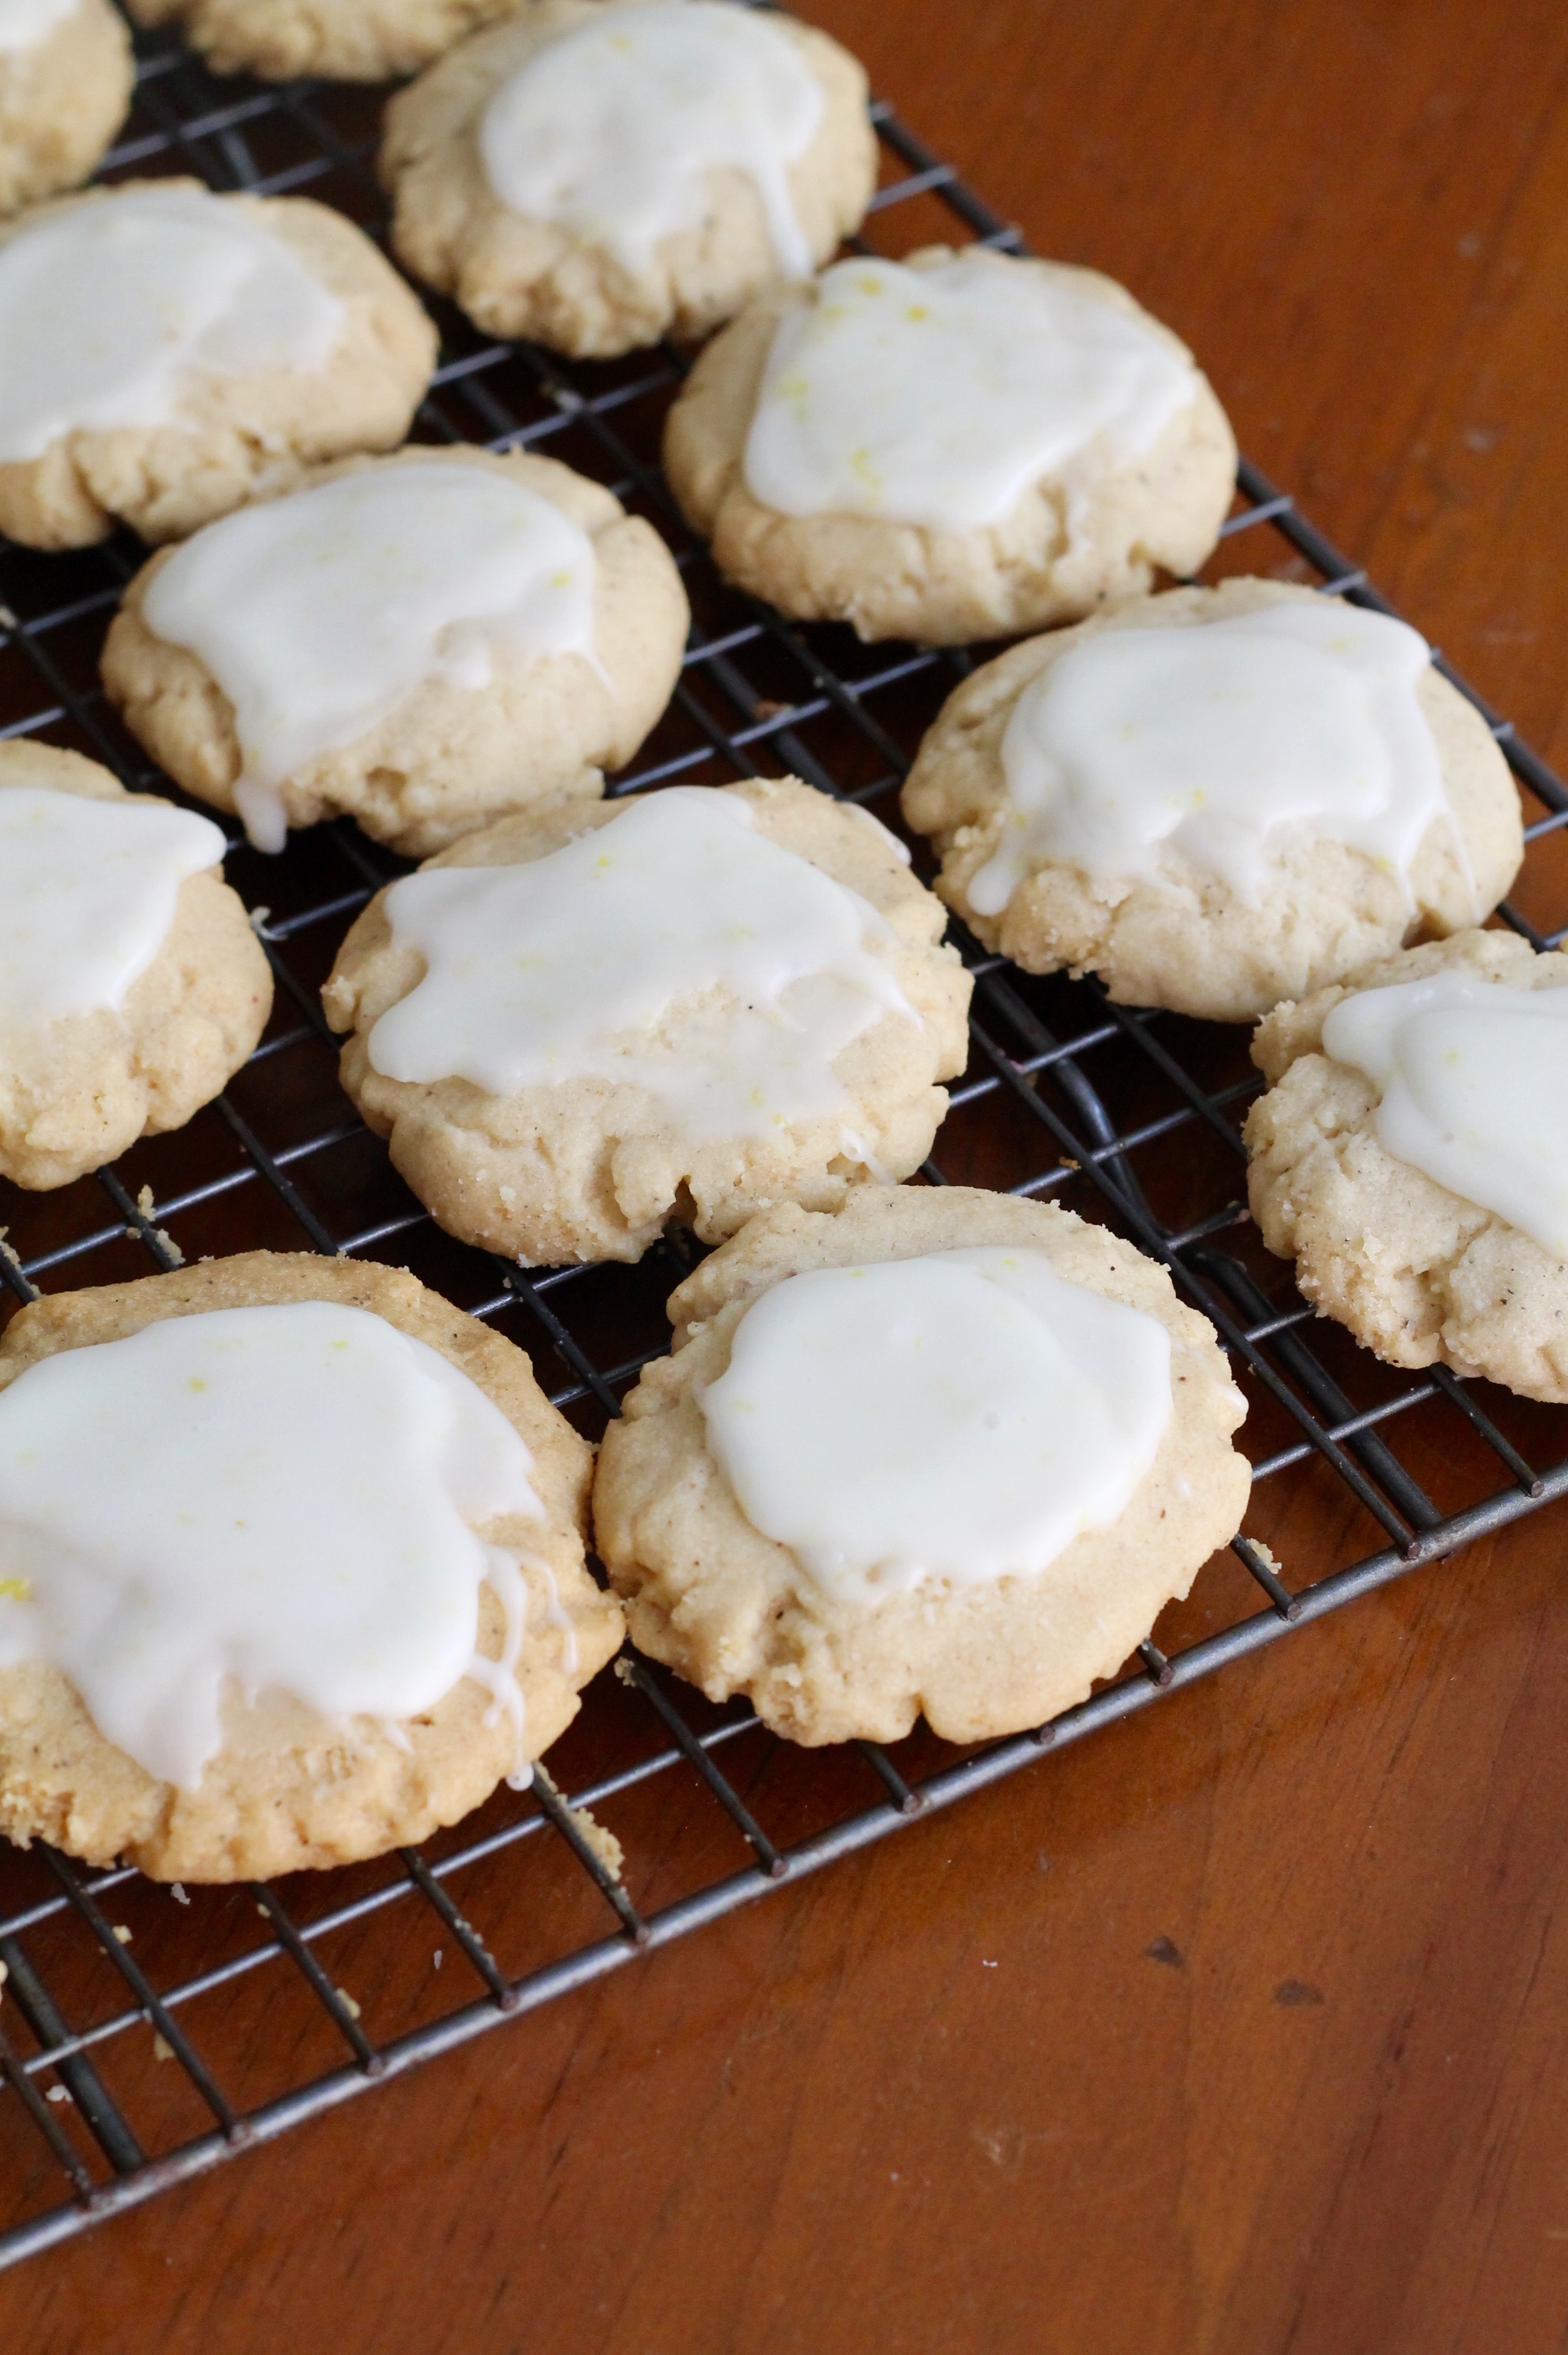 IMG 2612 - Rosemary Shortbread Cookies